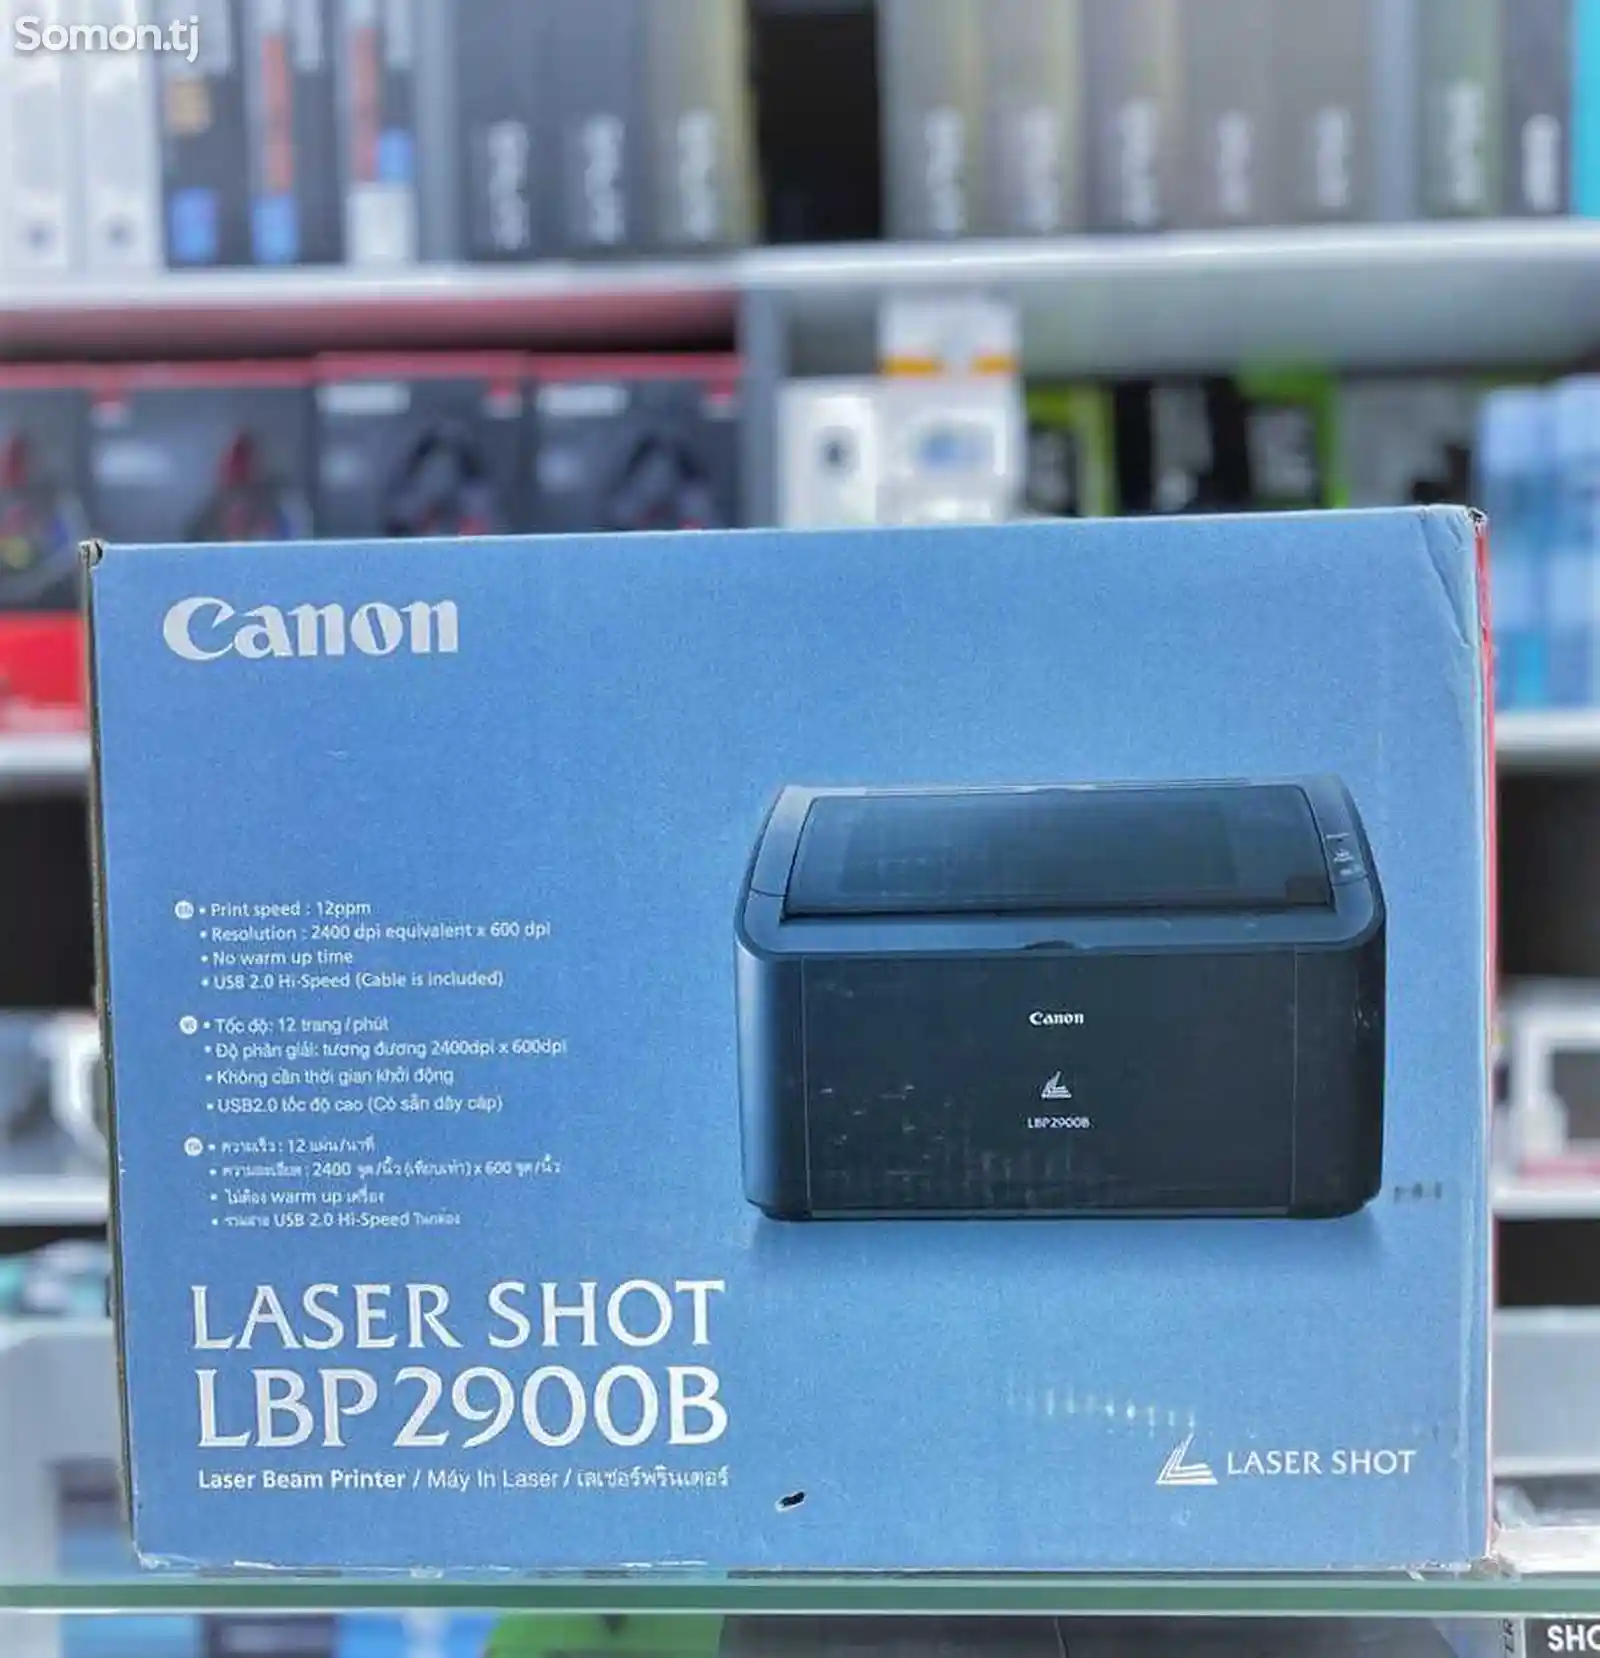 Принтер Canon Laser Shop LBP 2900B A4-1